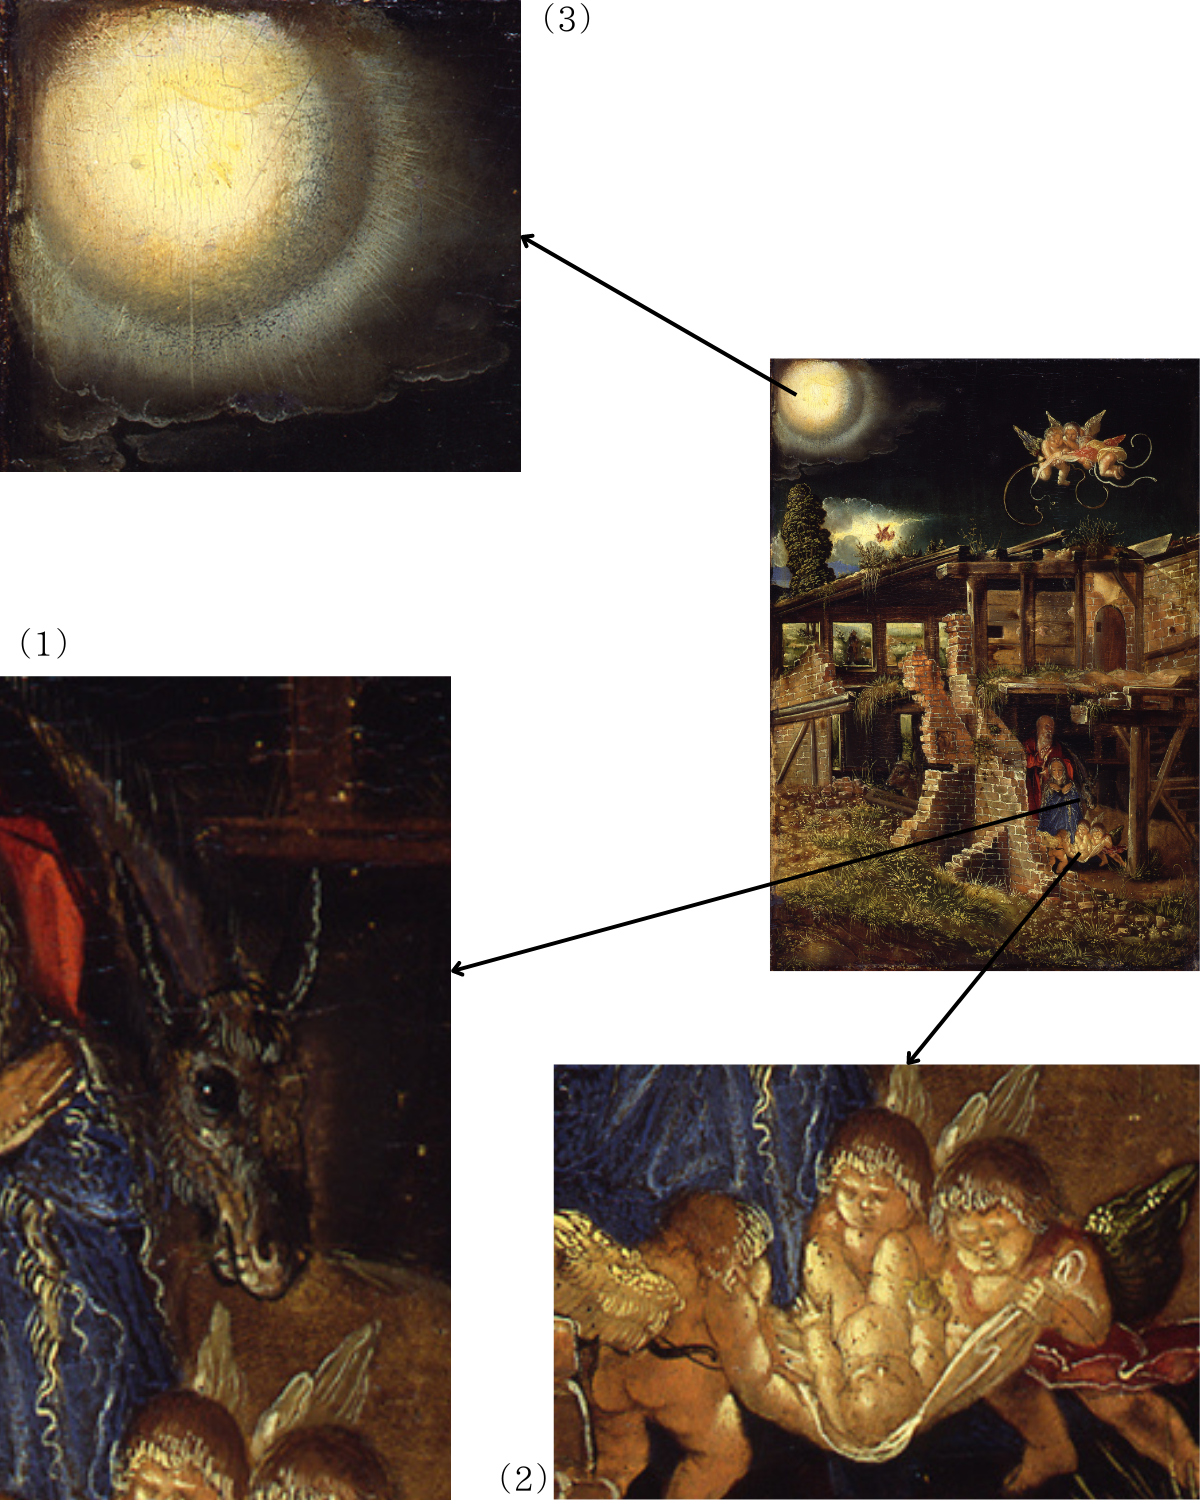 〈キリストの降誕〉（1）顔を出す驢馬（2）幼児キリスト（3）空に浮かぶ大きな光の暈